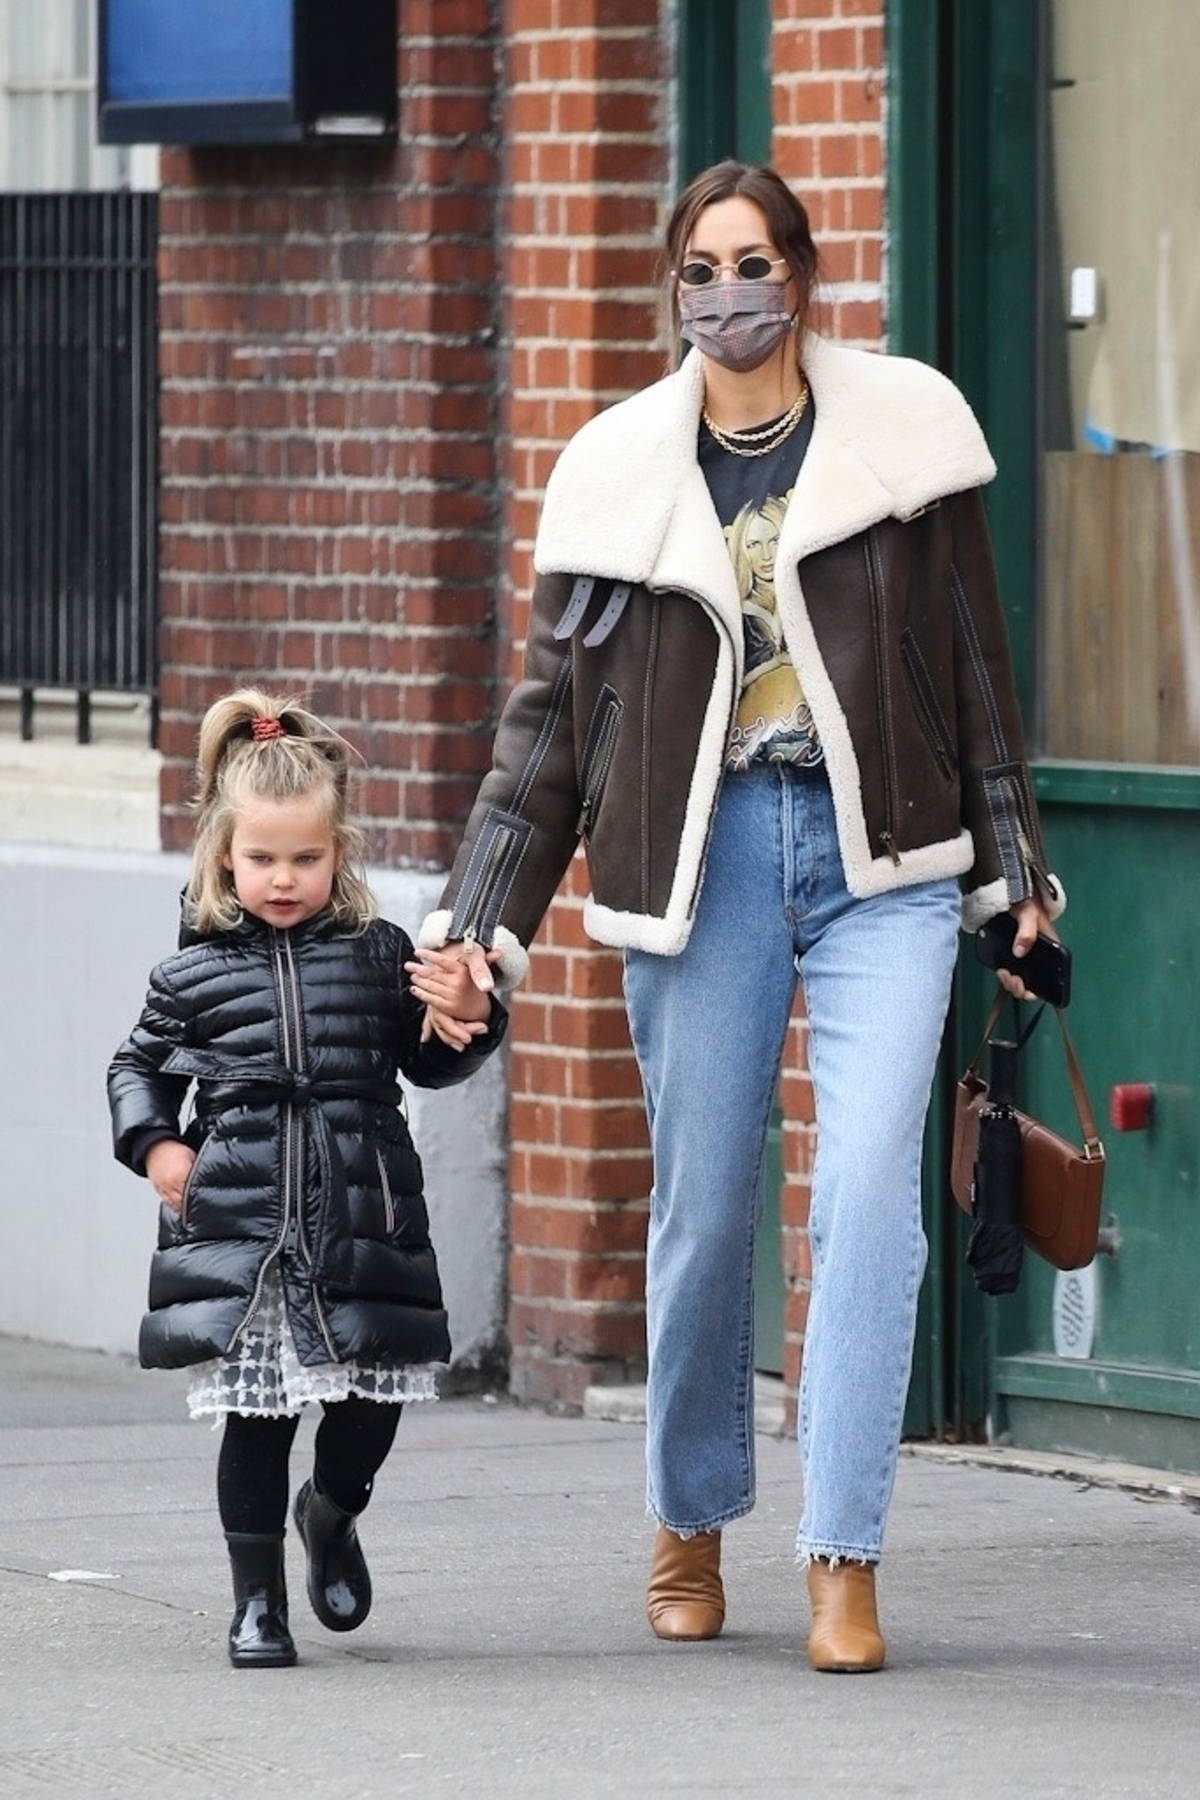 Con gái 4 tuổi của siêu mẫu Irina Shayk sợ paparazzi - Ảnh 2